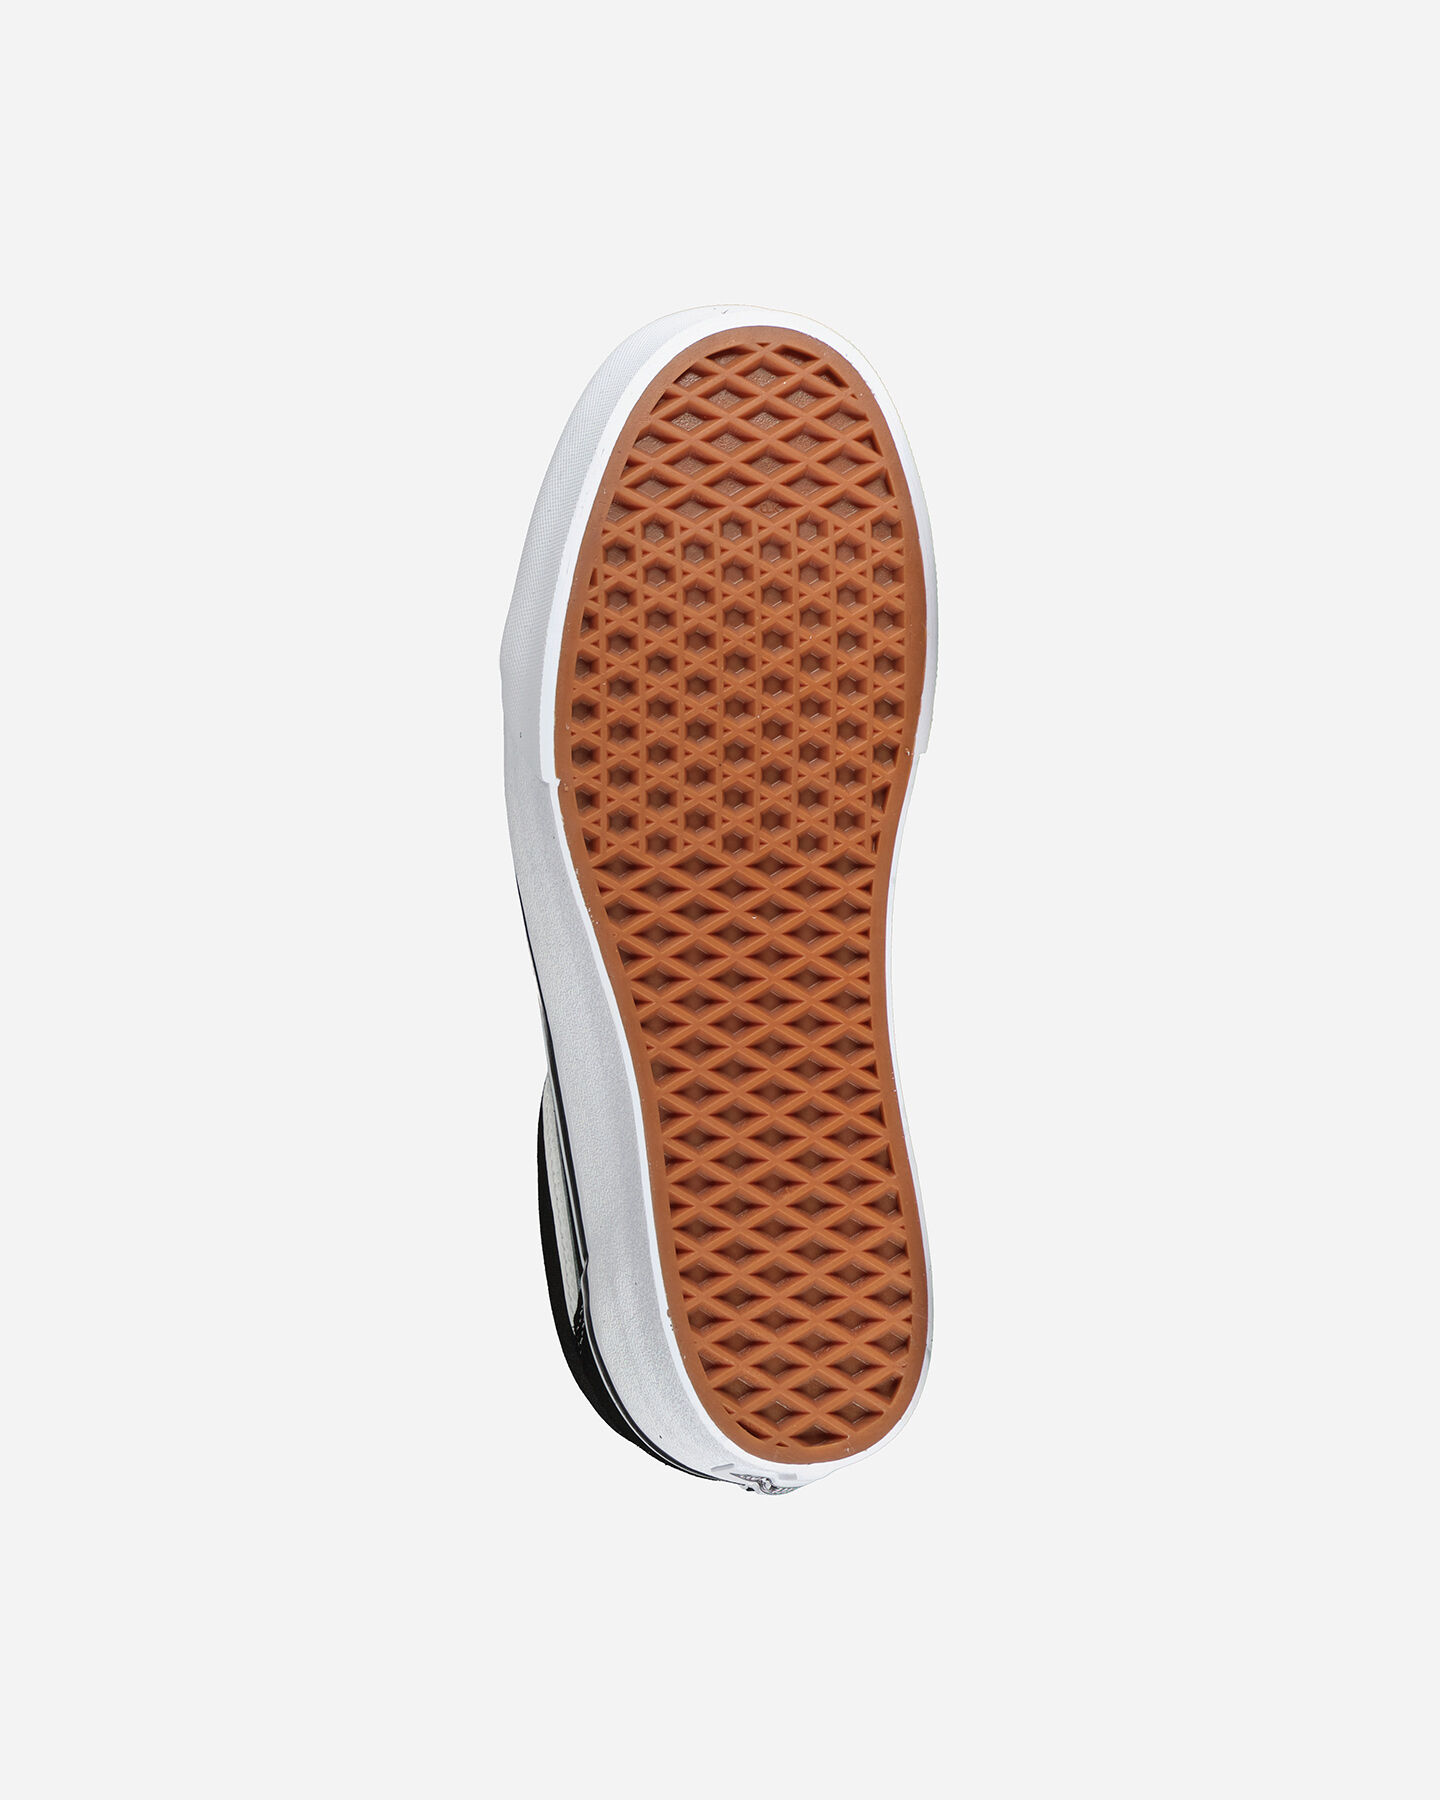  Scarpe sneakers VANS OLD SKOOL PLATFORM W S4026202|001|4 scatto 2